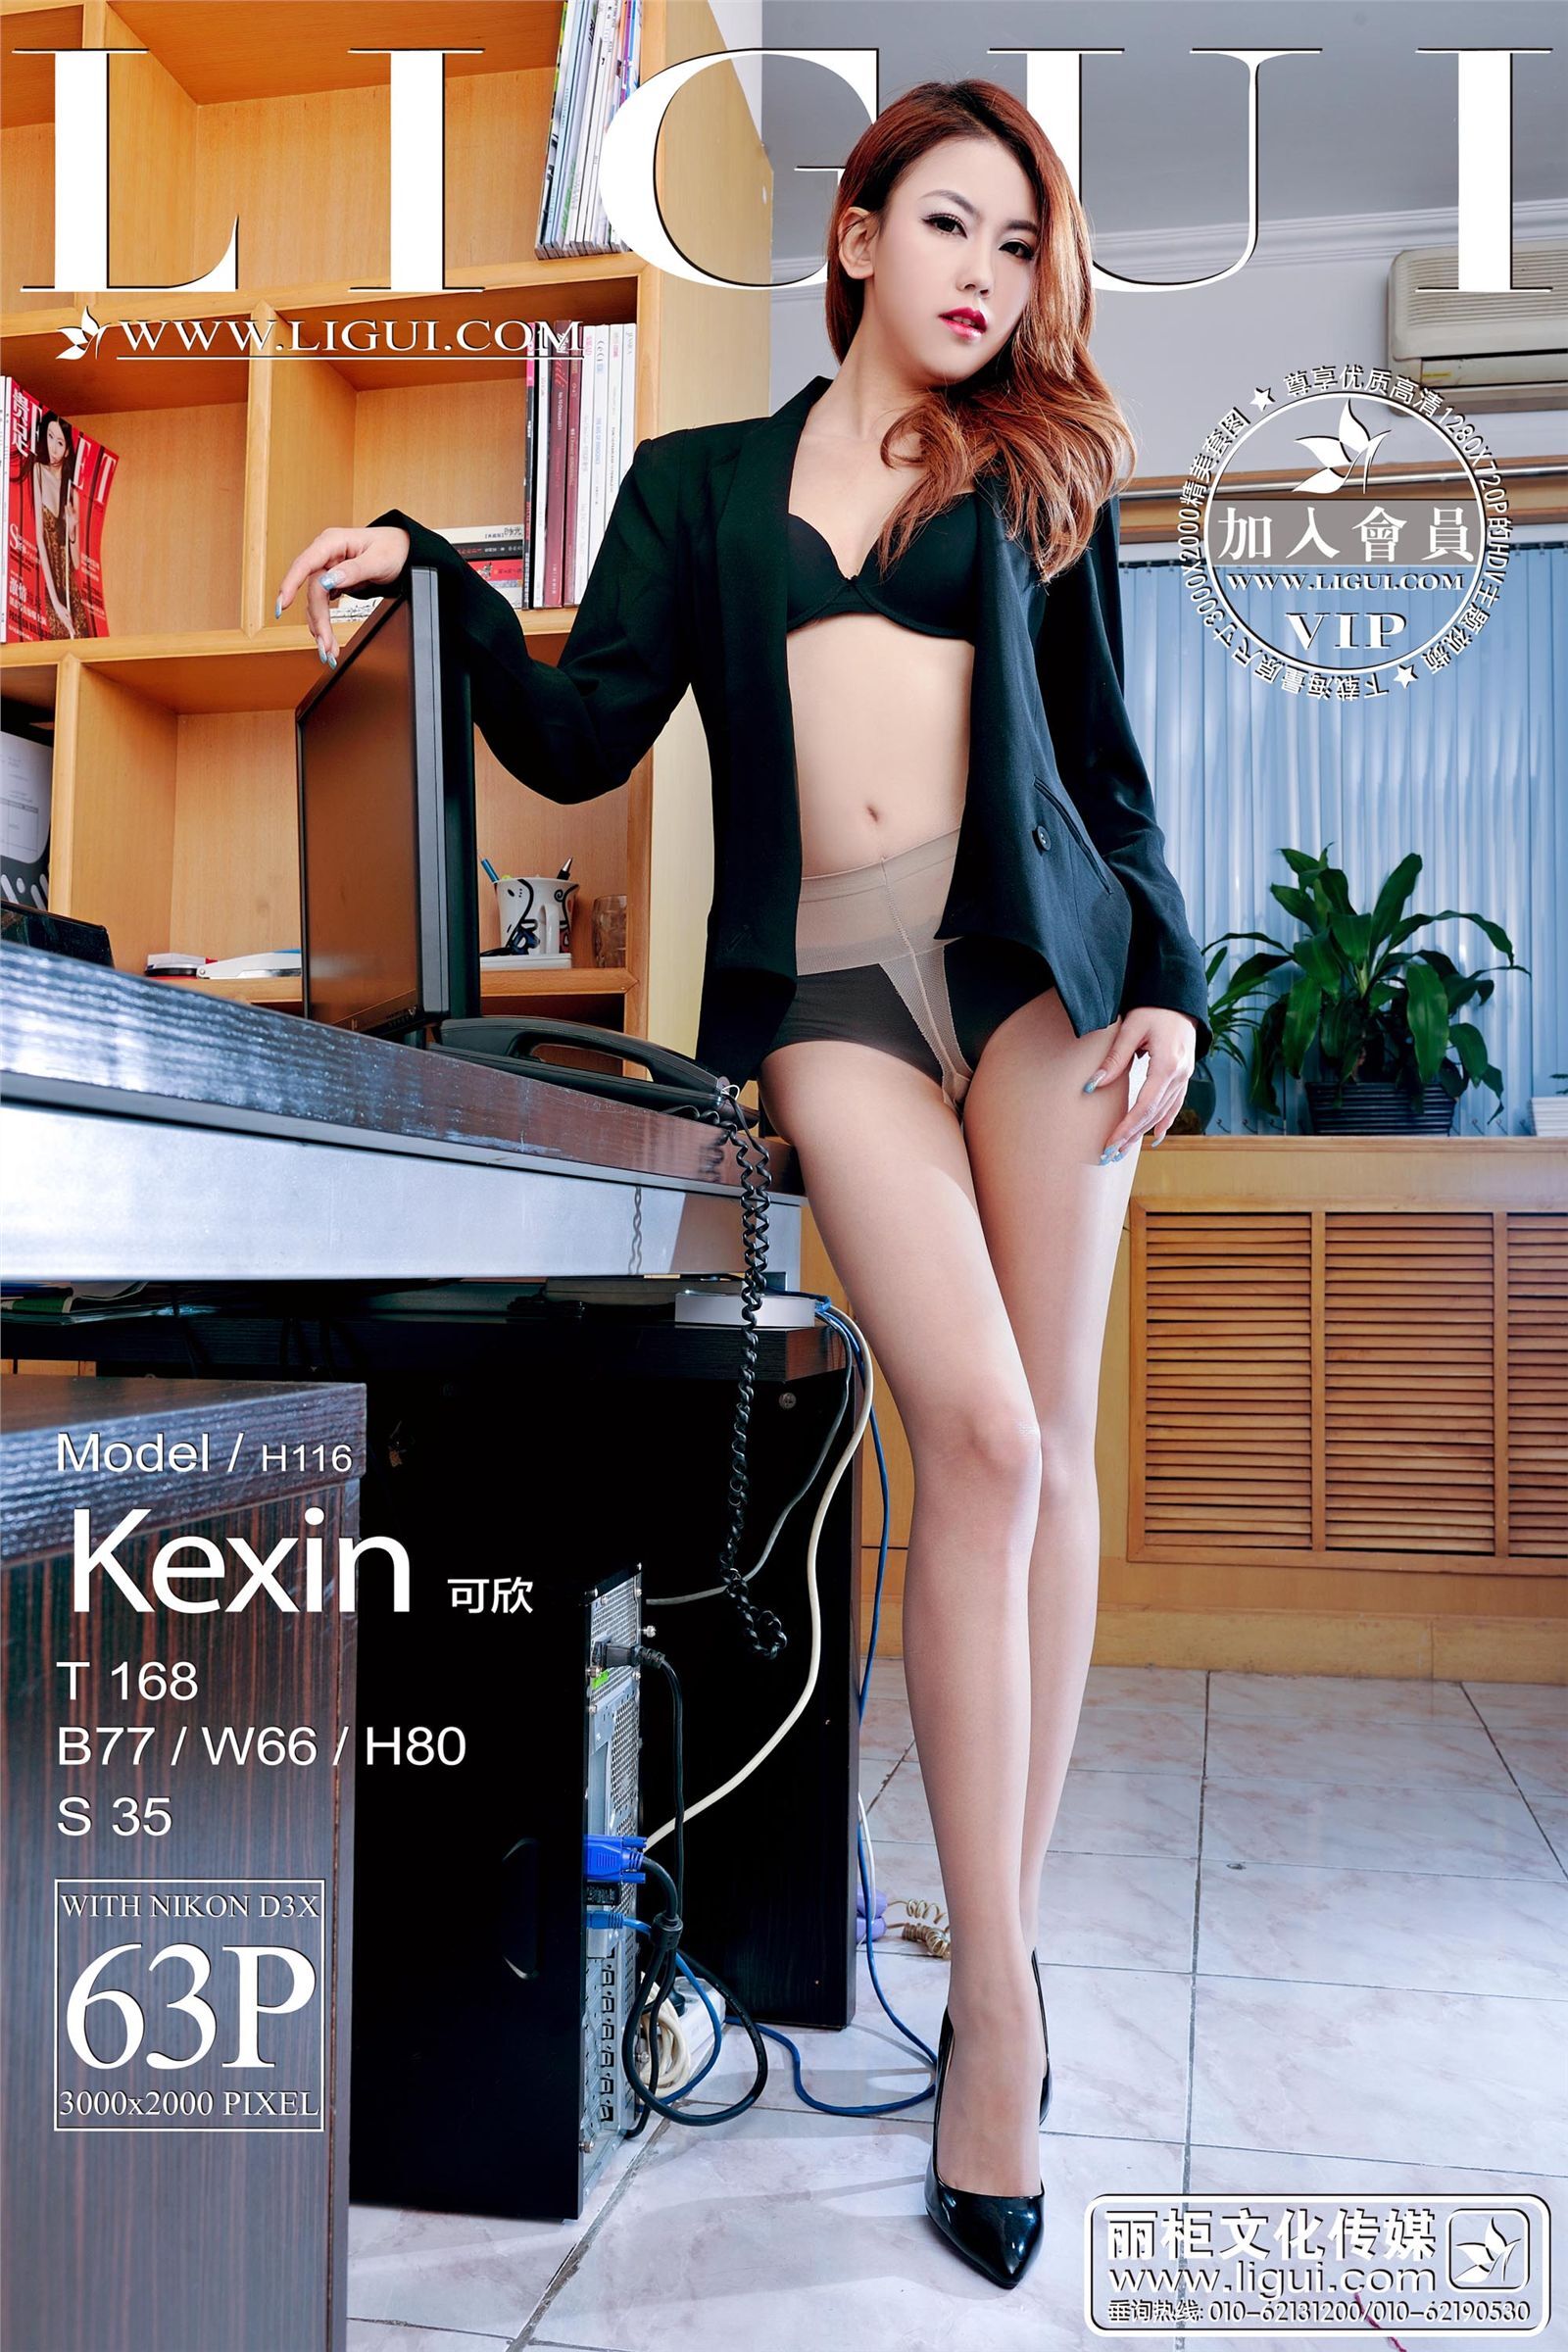 [麗櫃] 20130327 時尚寫真 MODEL 可馨 最新丝袜制服美女